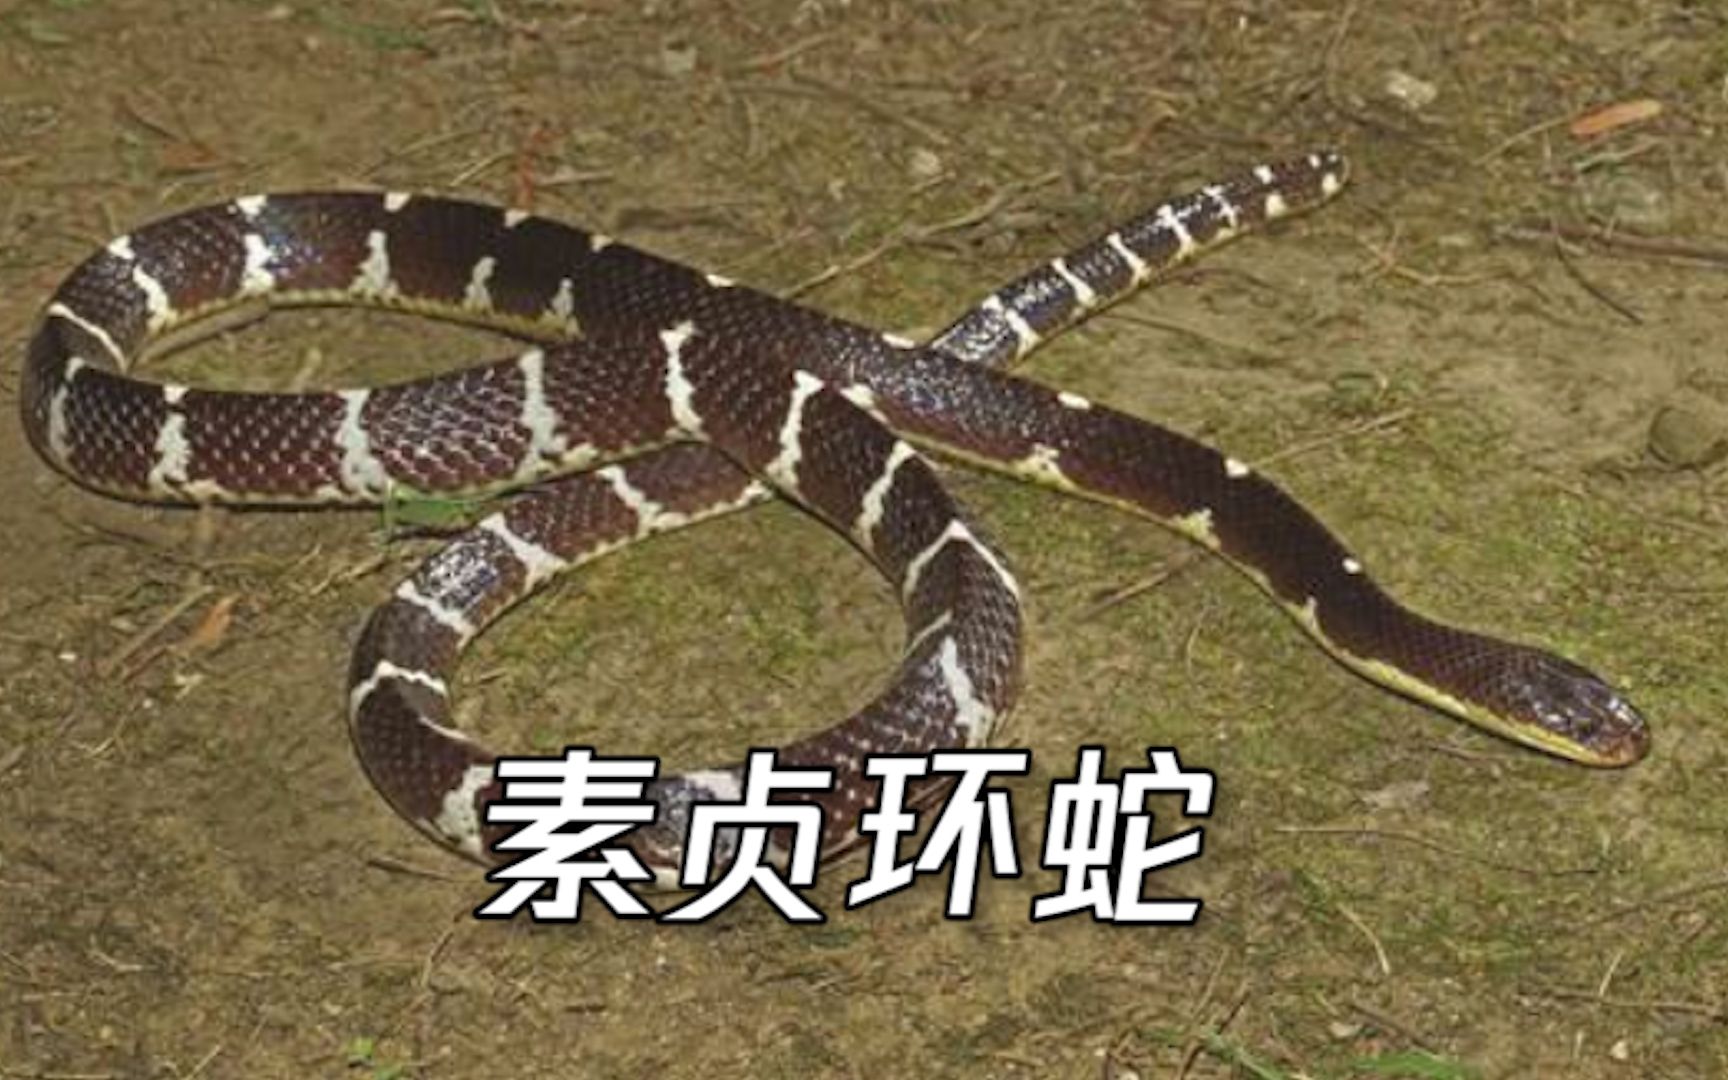 以白素贞命名云南盈江发现剧毒蛇新种素贞环蛇